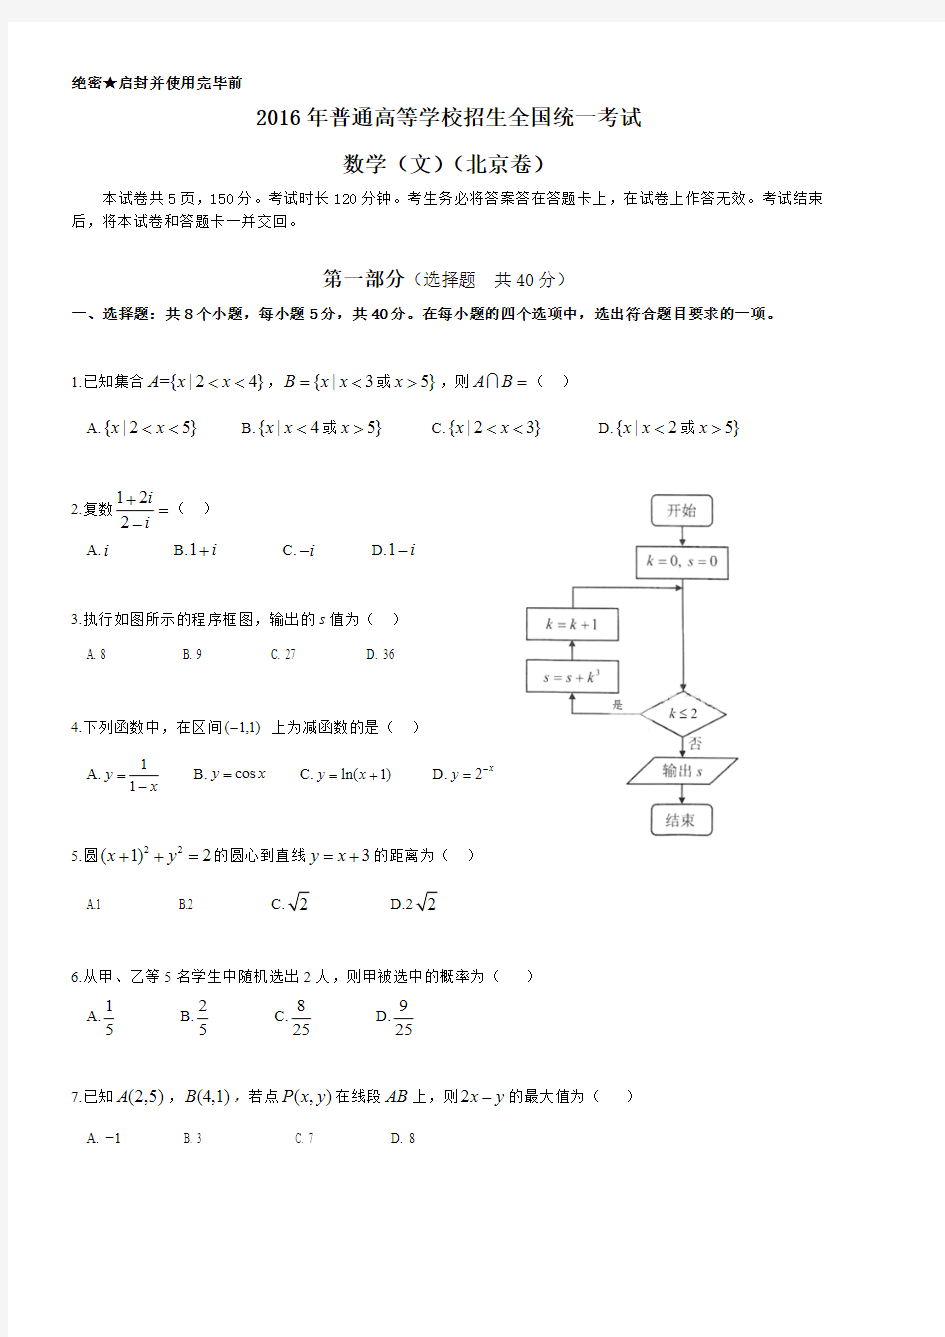 2016年北京高考数学文科试题及答案(最新整理)